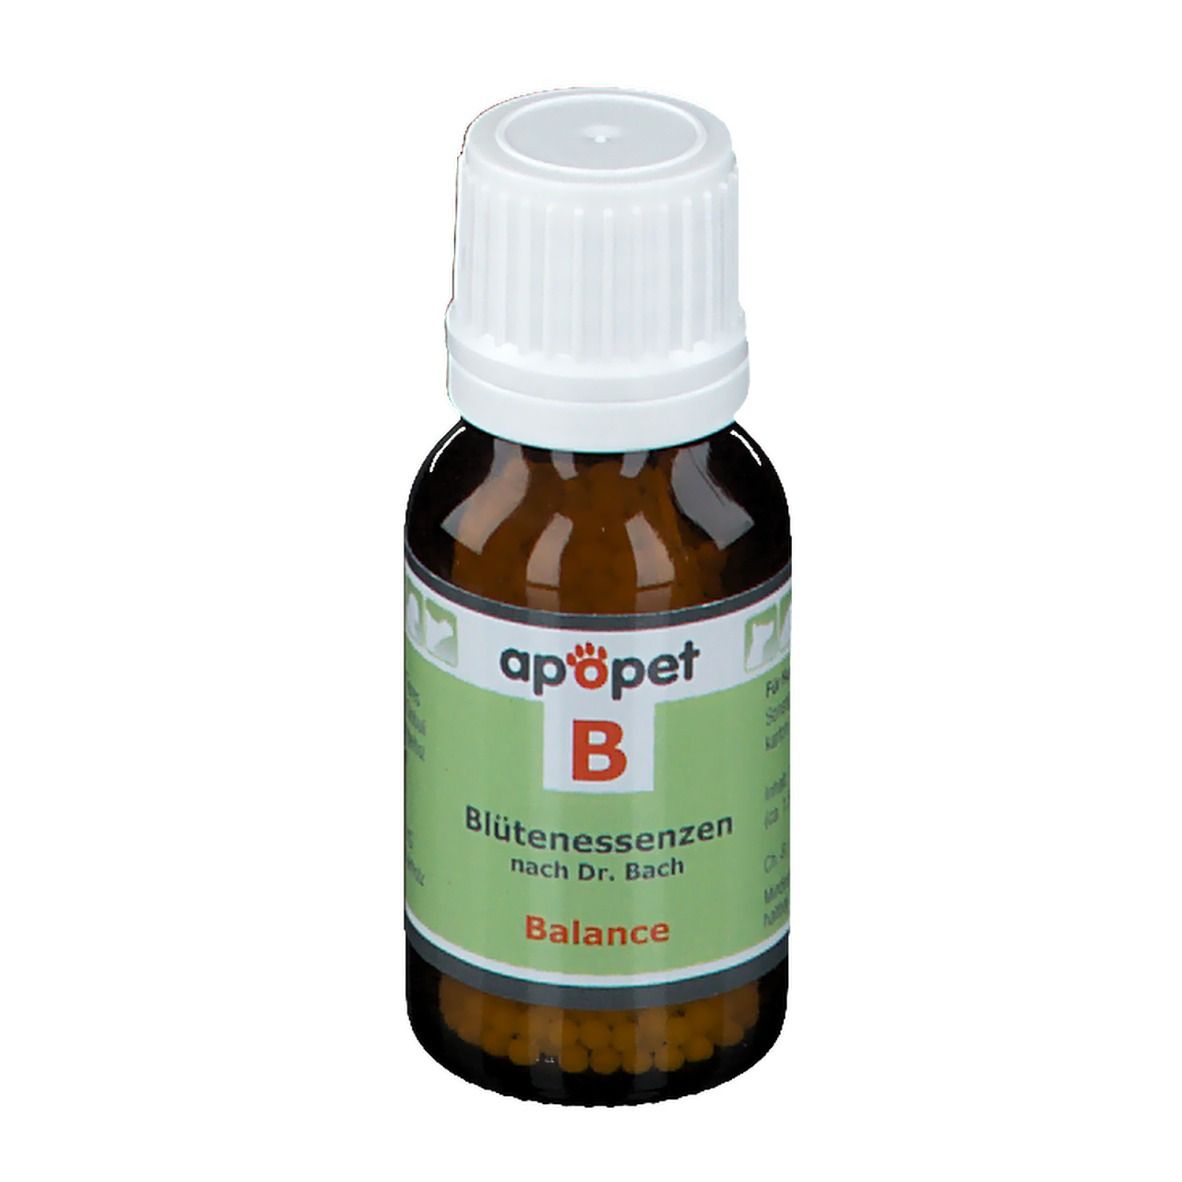 apopet® Blütenessenz nach Dr. Bach  B – Balance